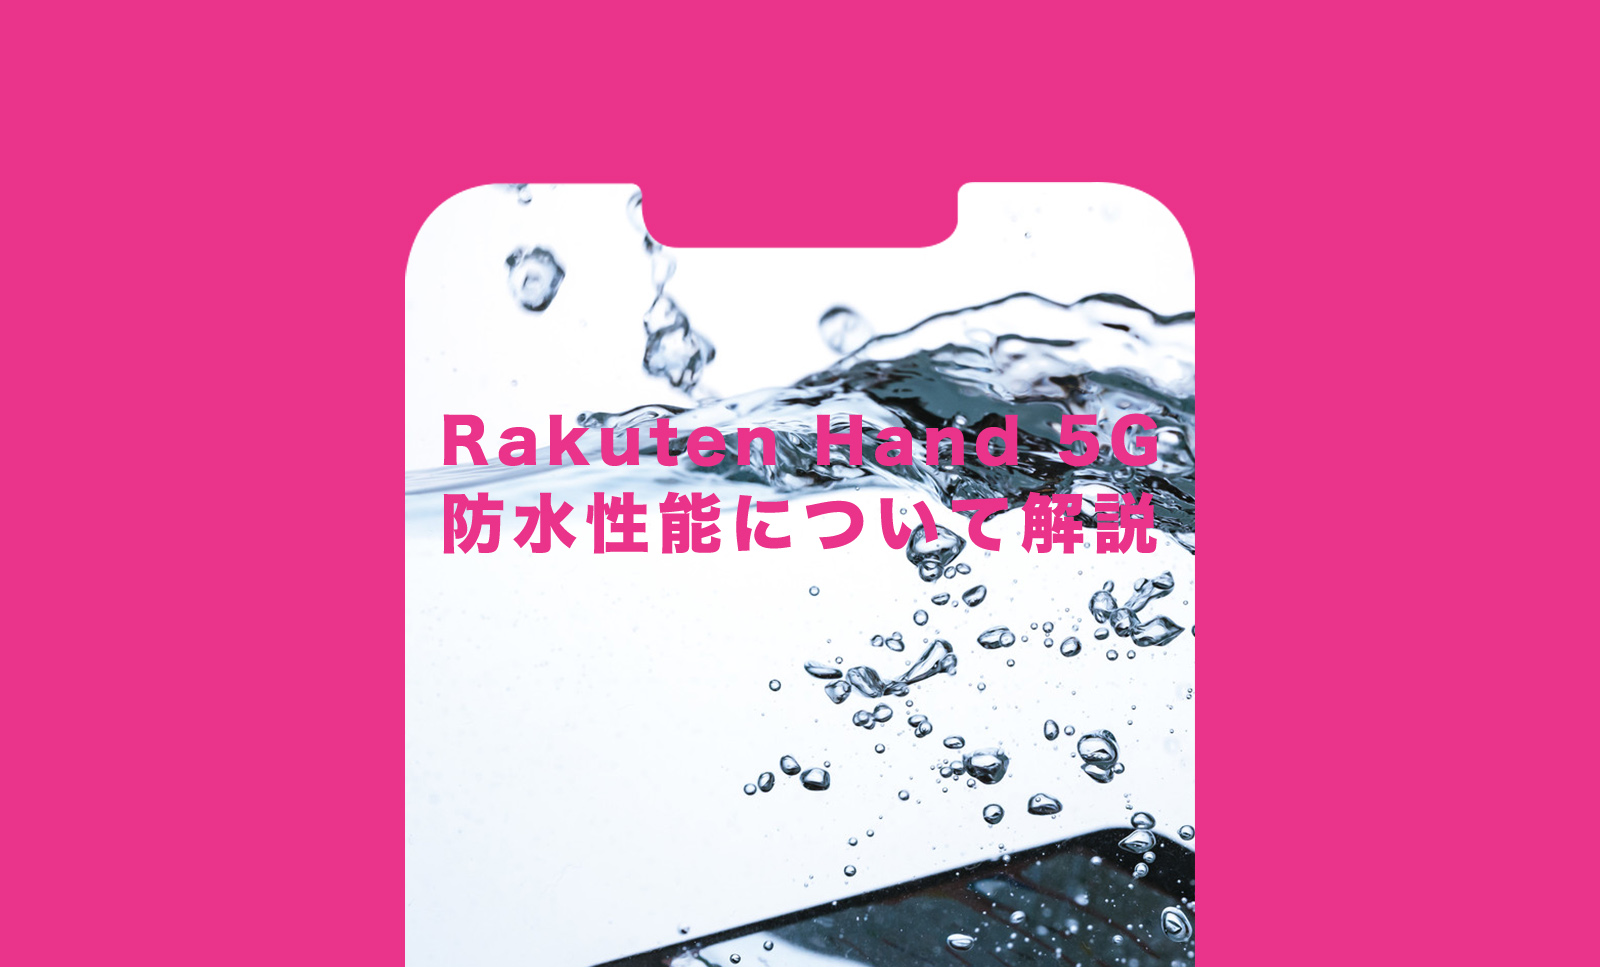 楽天ハンド5G(Rakuten Hand 5G)の防水性能について解説のサムネイル画像